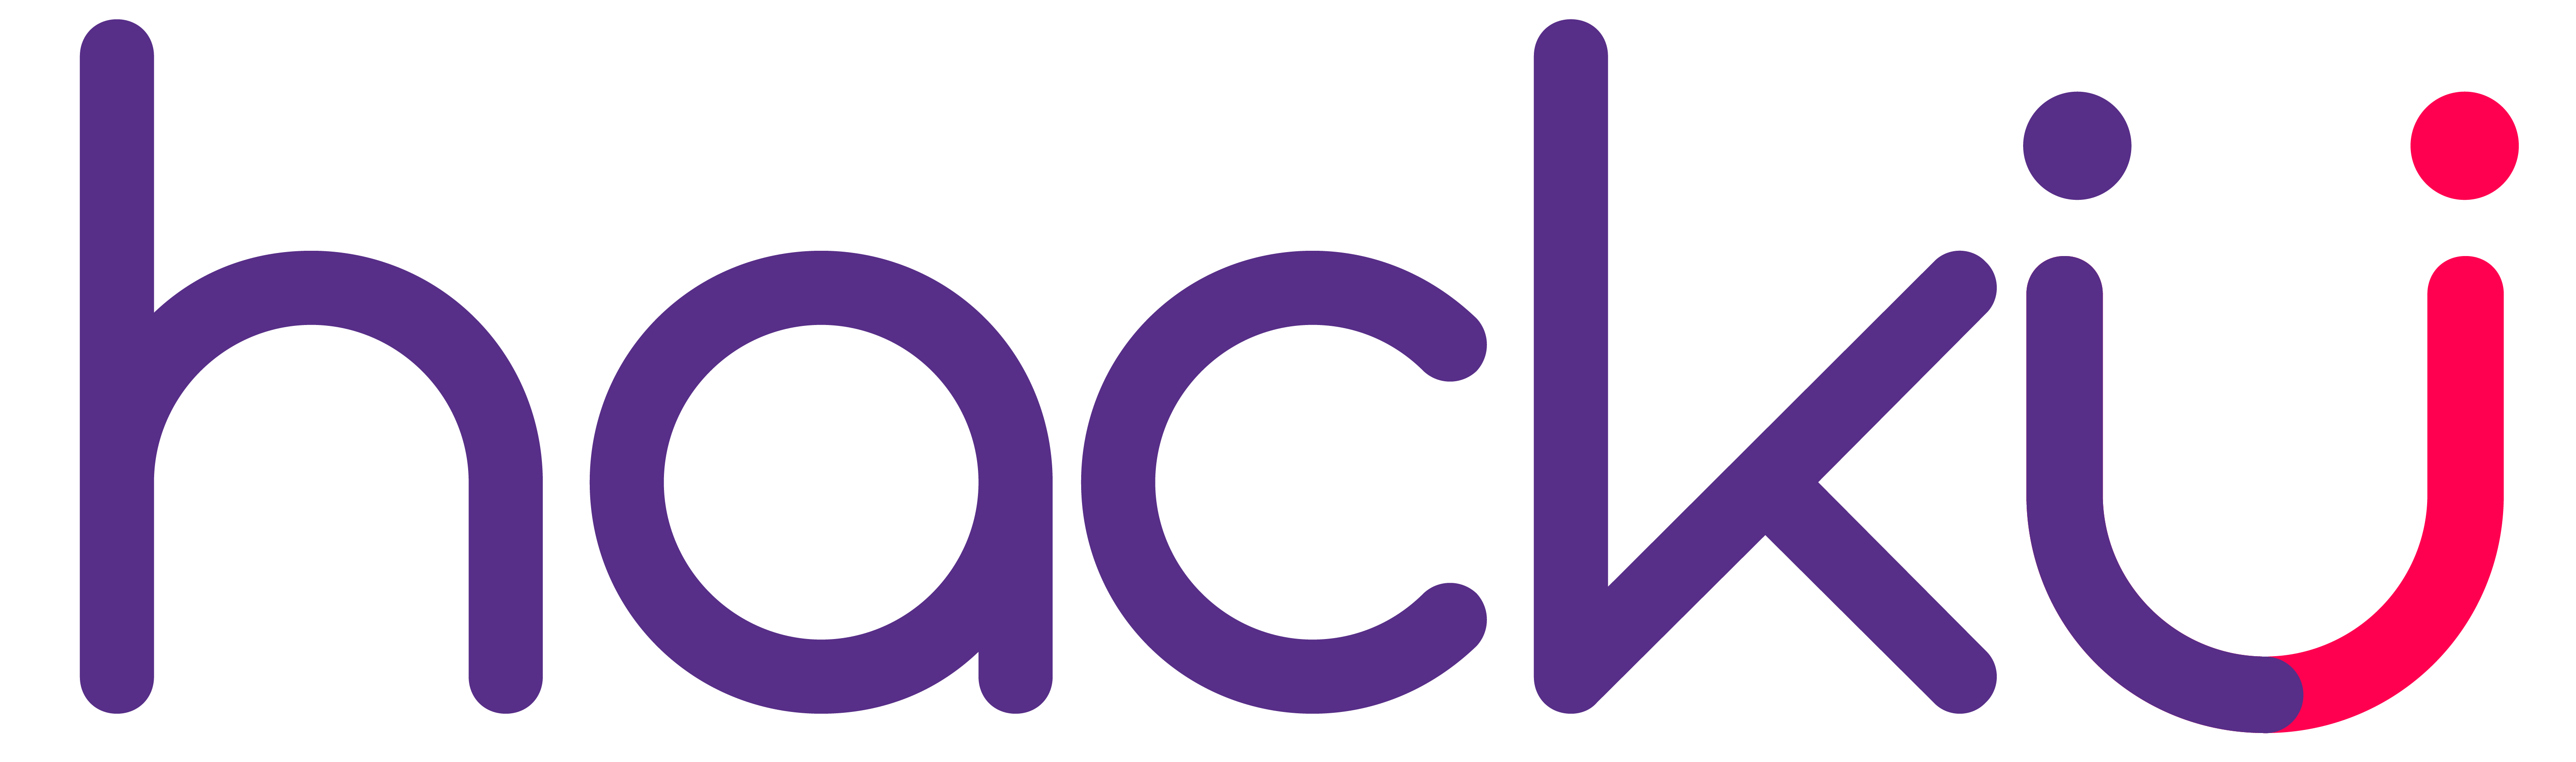 Logotipo de Hacku